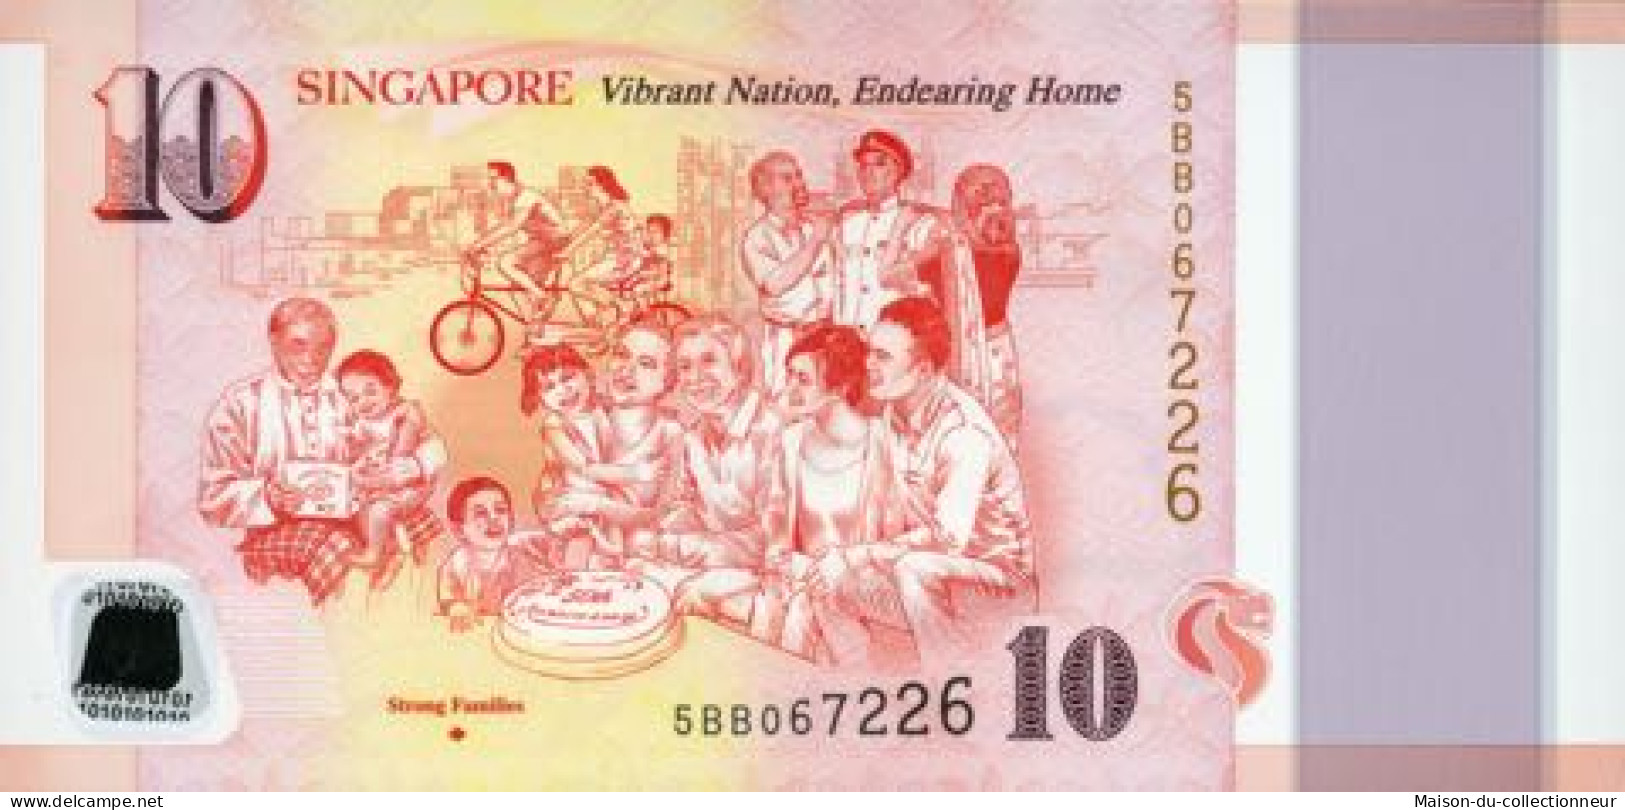 Singapour Billet de banque collection - Série de 6 billets